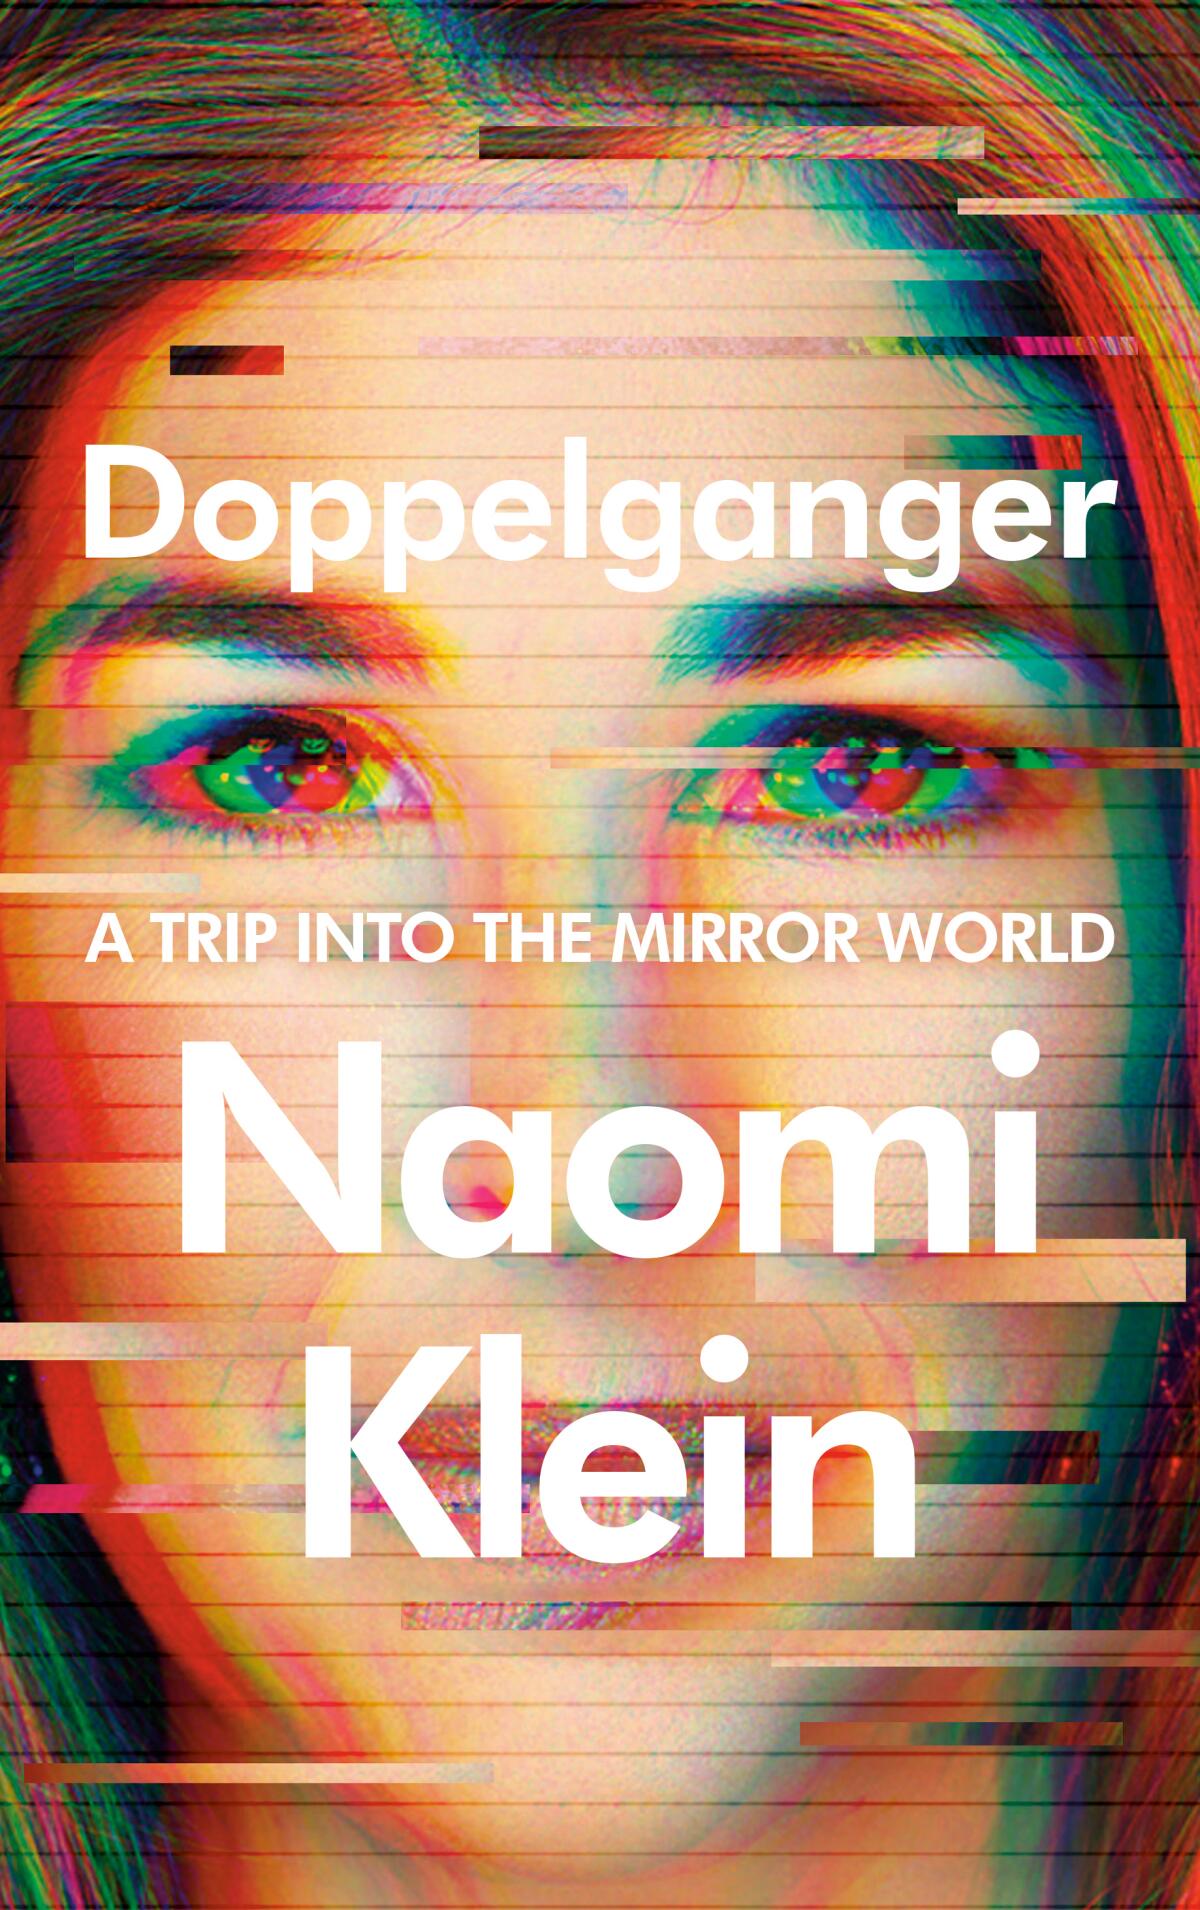 "Doppelganger," by Naomi Klein